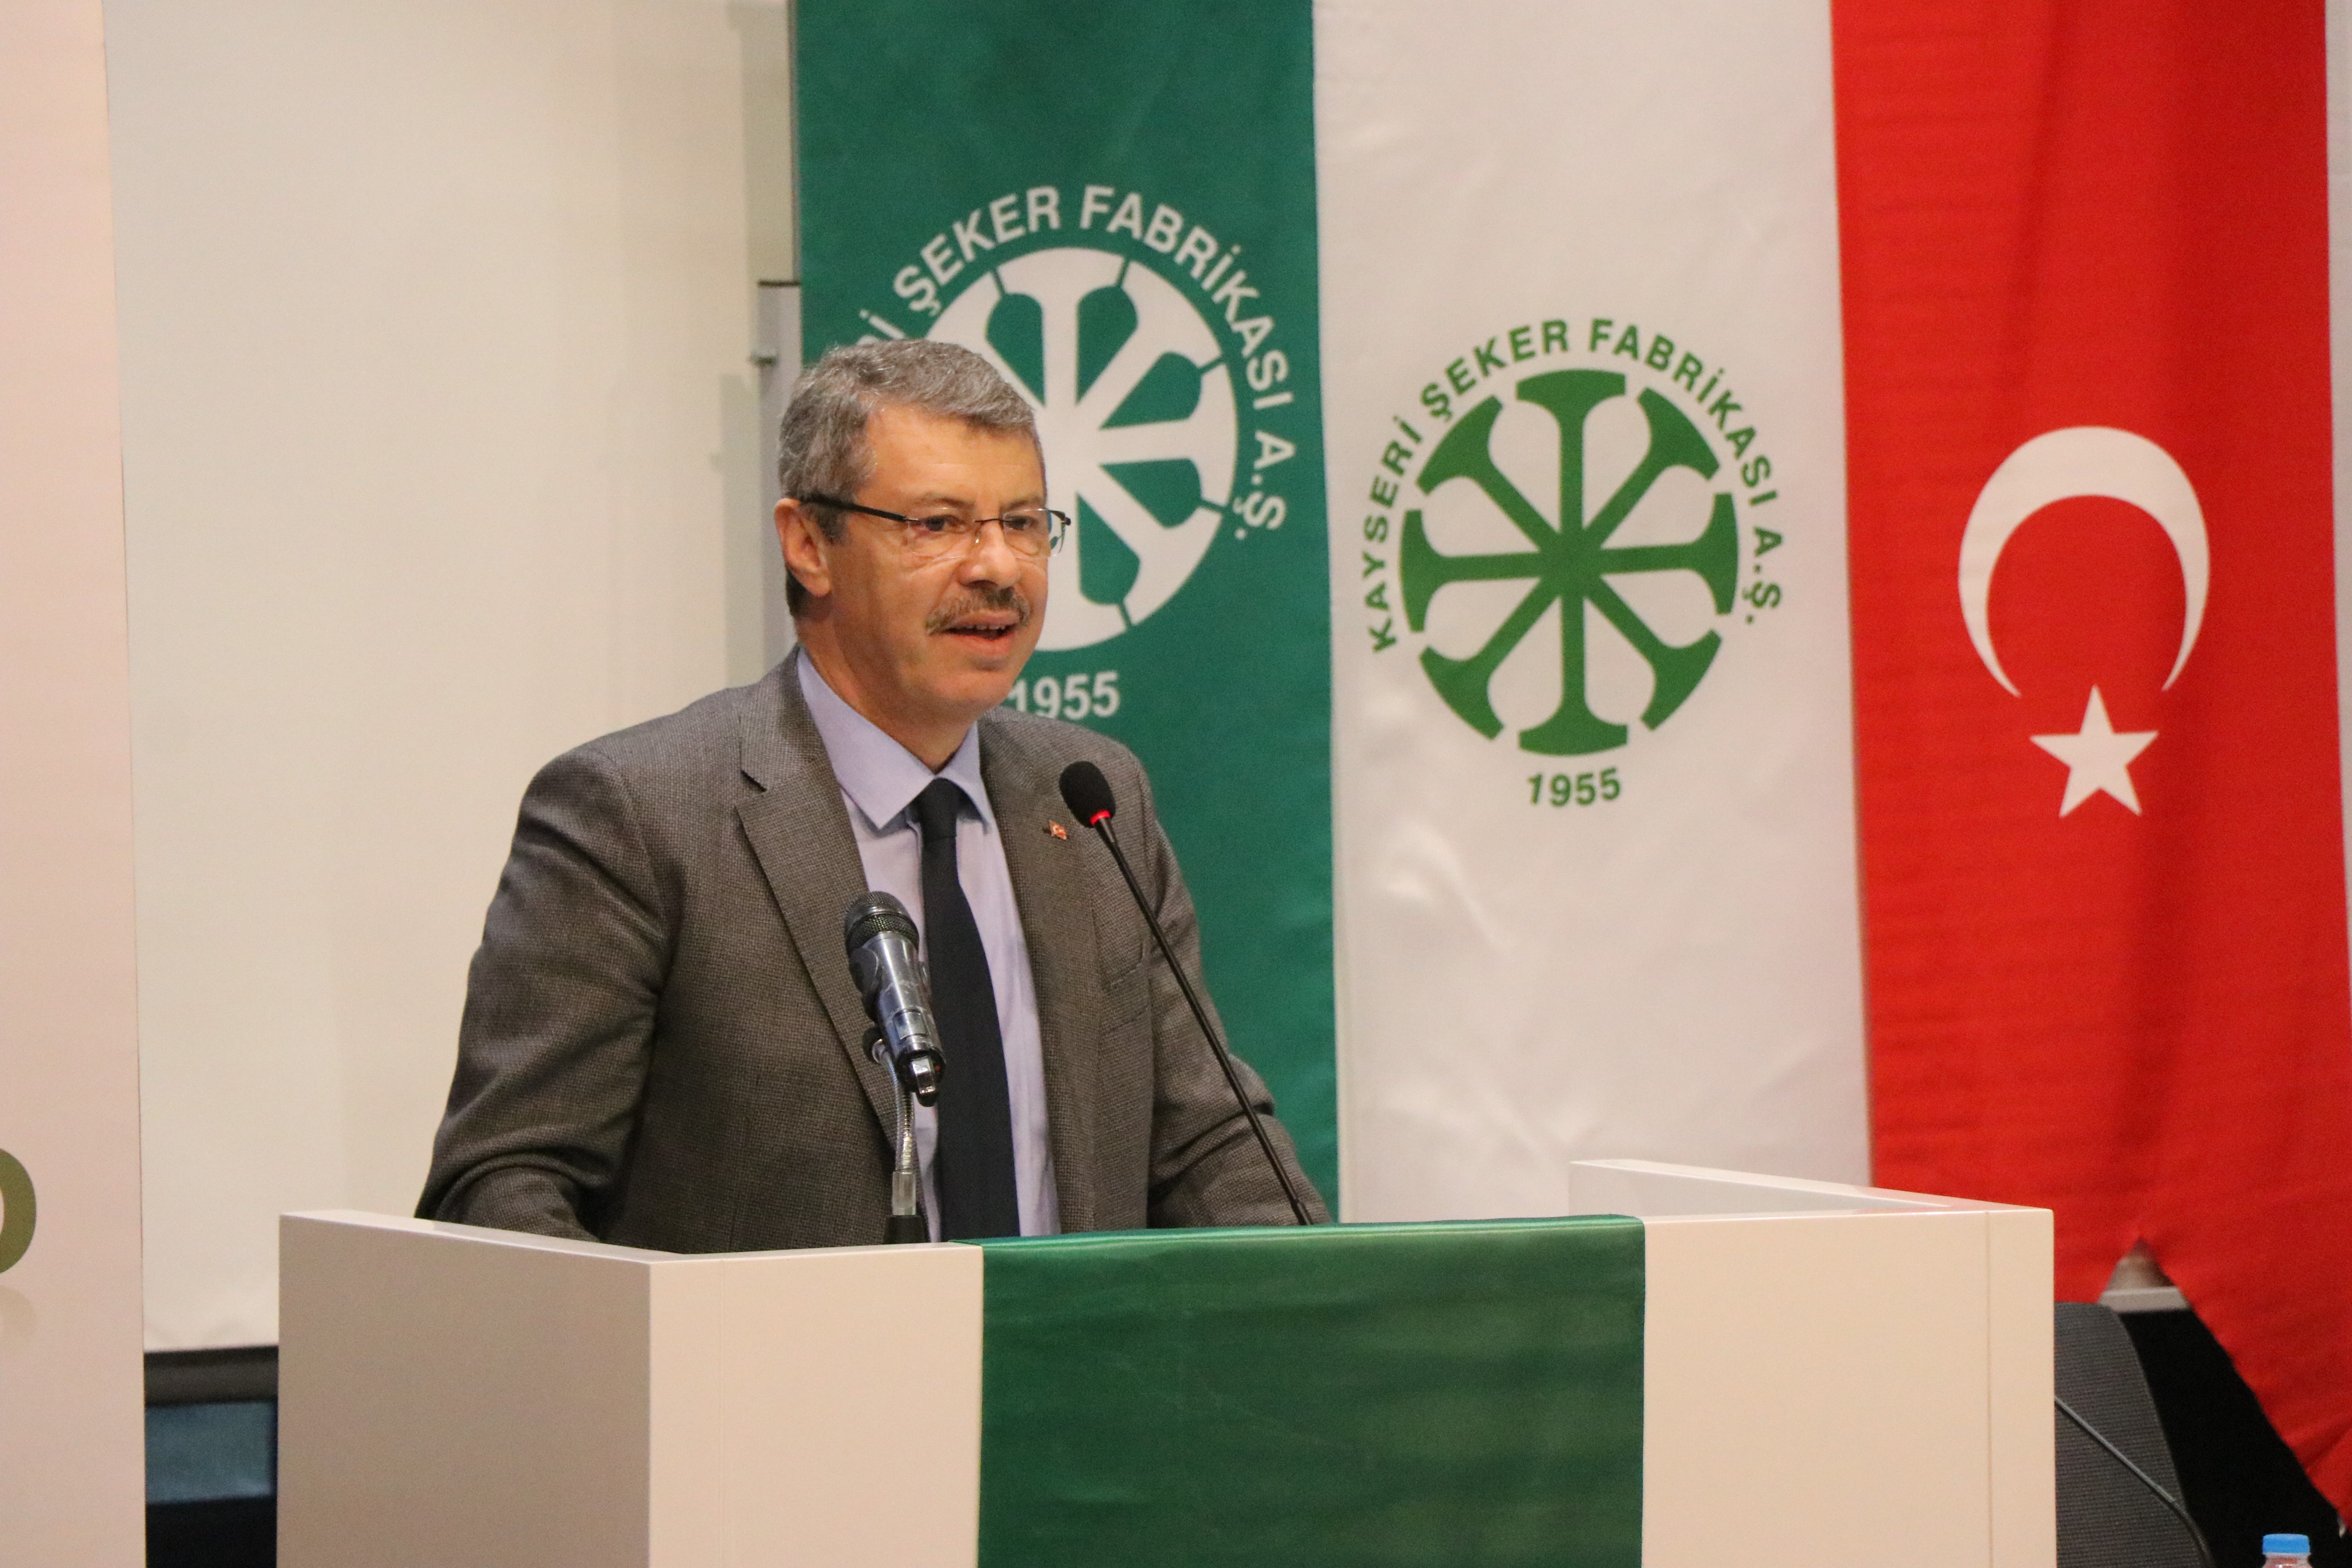 Kayseri Pancar Kooperatifi Başkanı Akay: “Sözleşmeli tarım, Türkiye’deki tarımı kurtaracak bir modeldir”